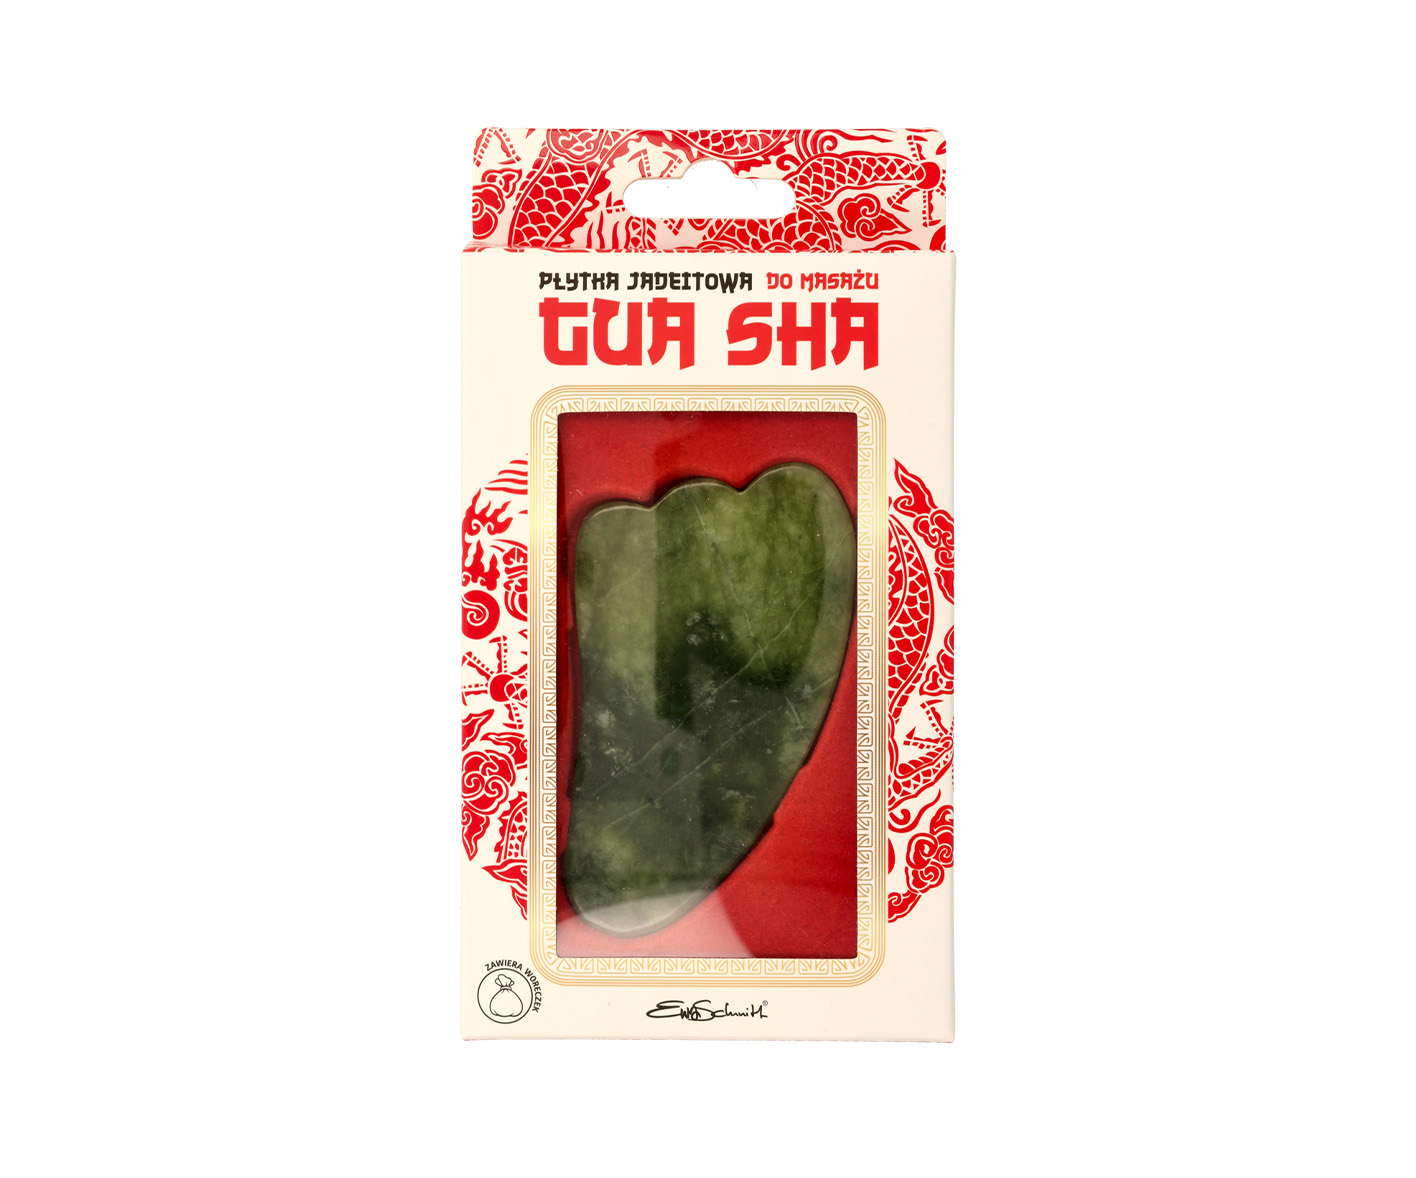 EWA SCHMITT, Kamień Gua Sha z zielonego jadeitu